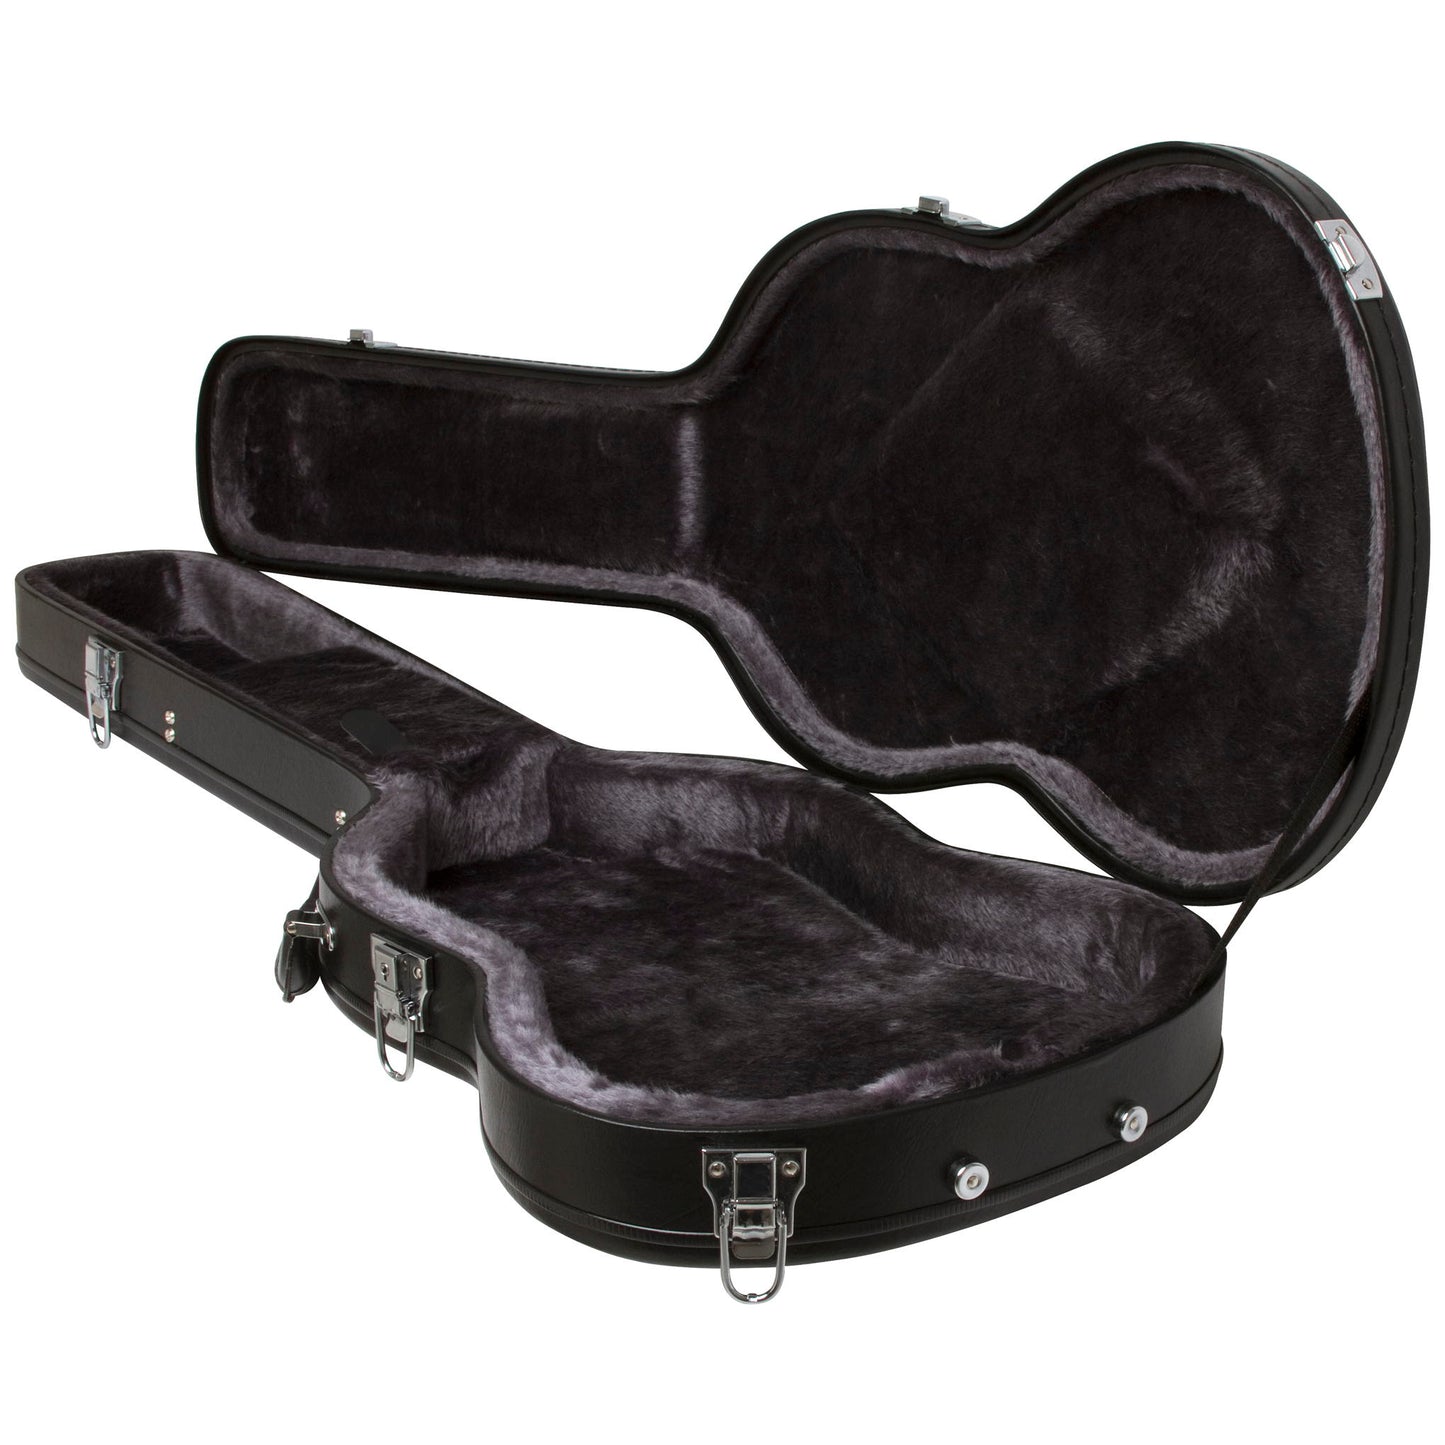 Epiphone EGCS Hardshell Case for SG-Style Guitars